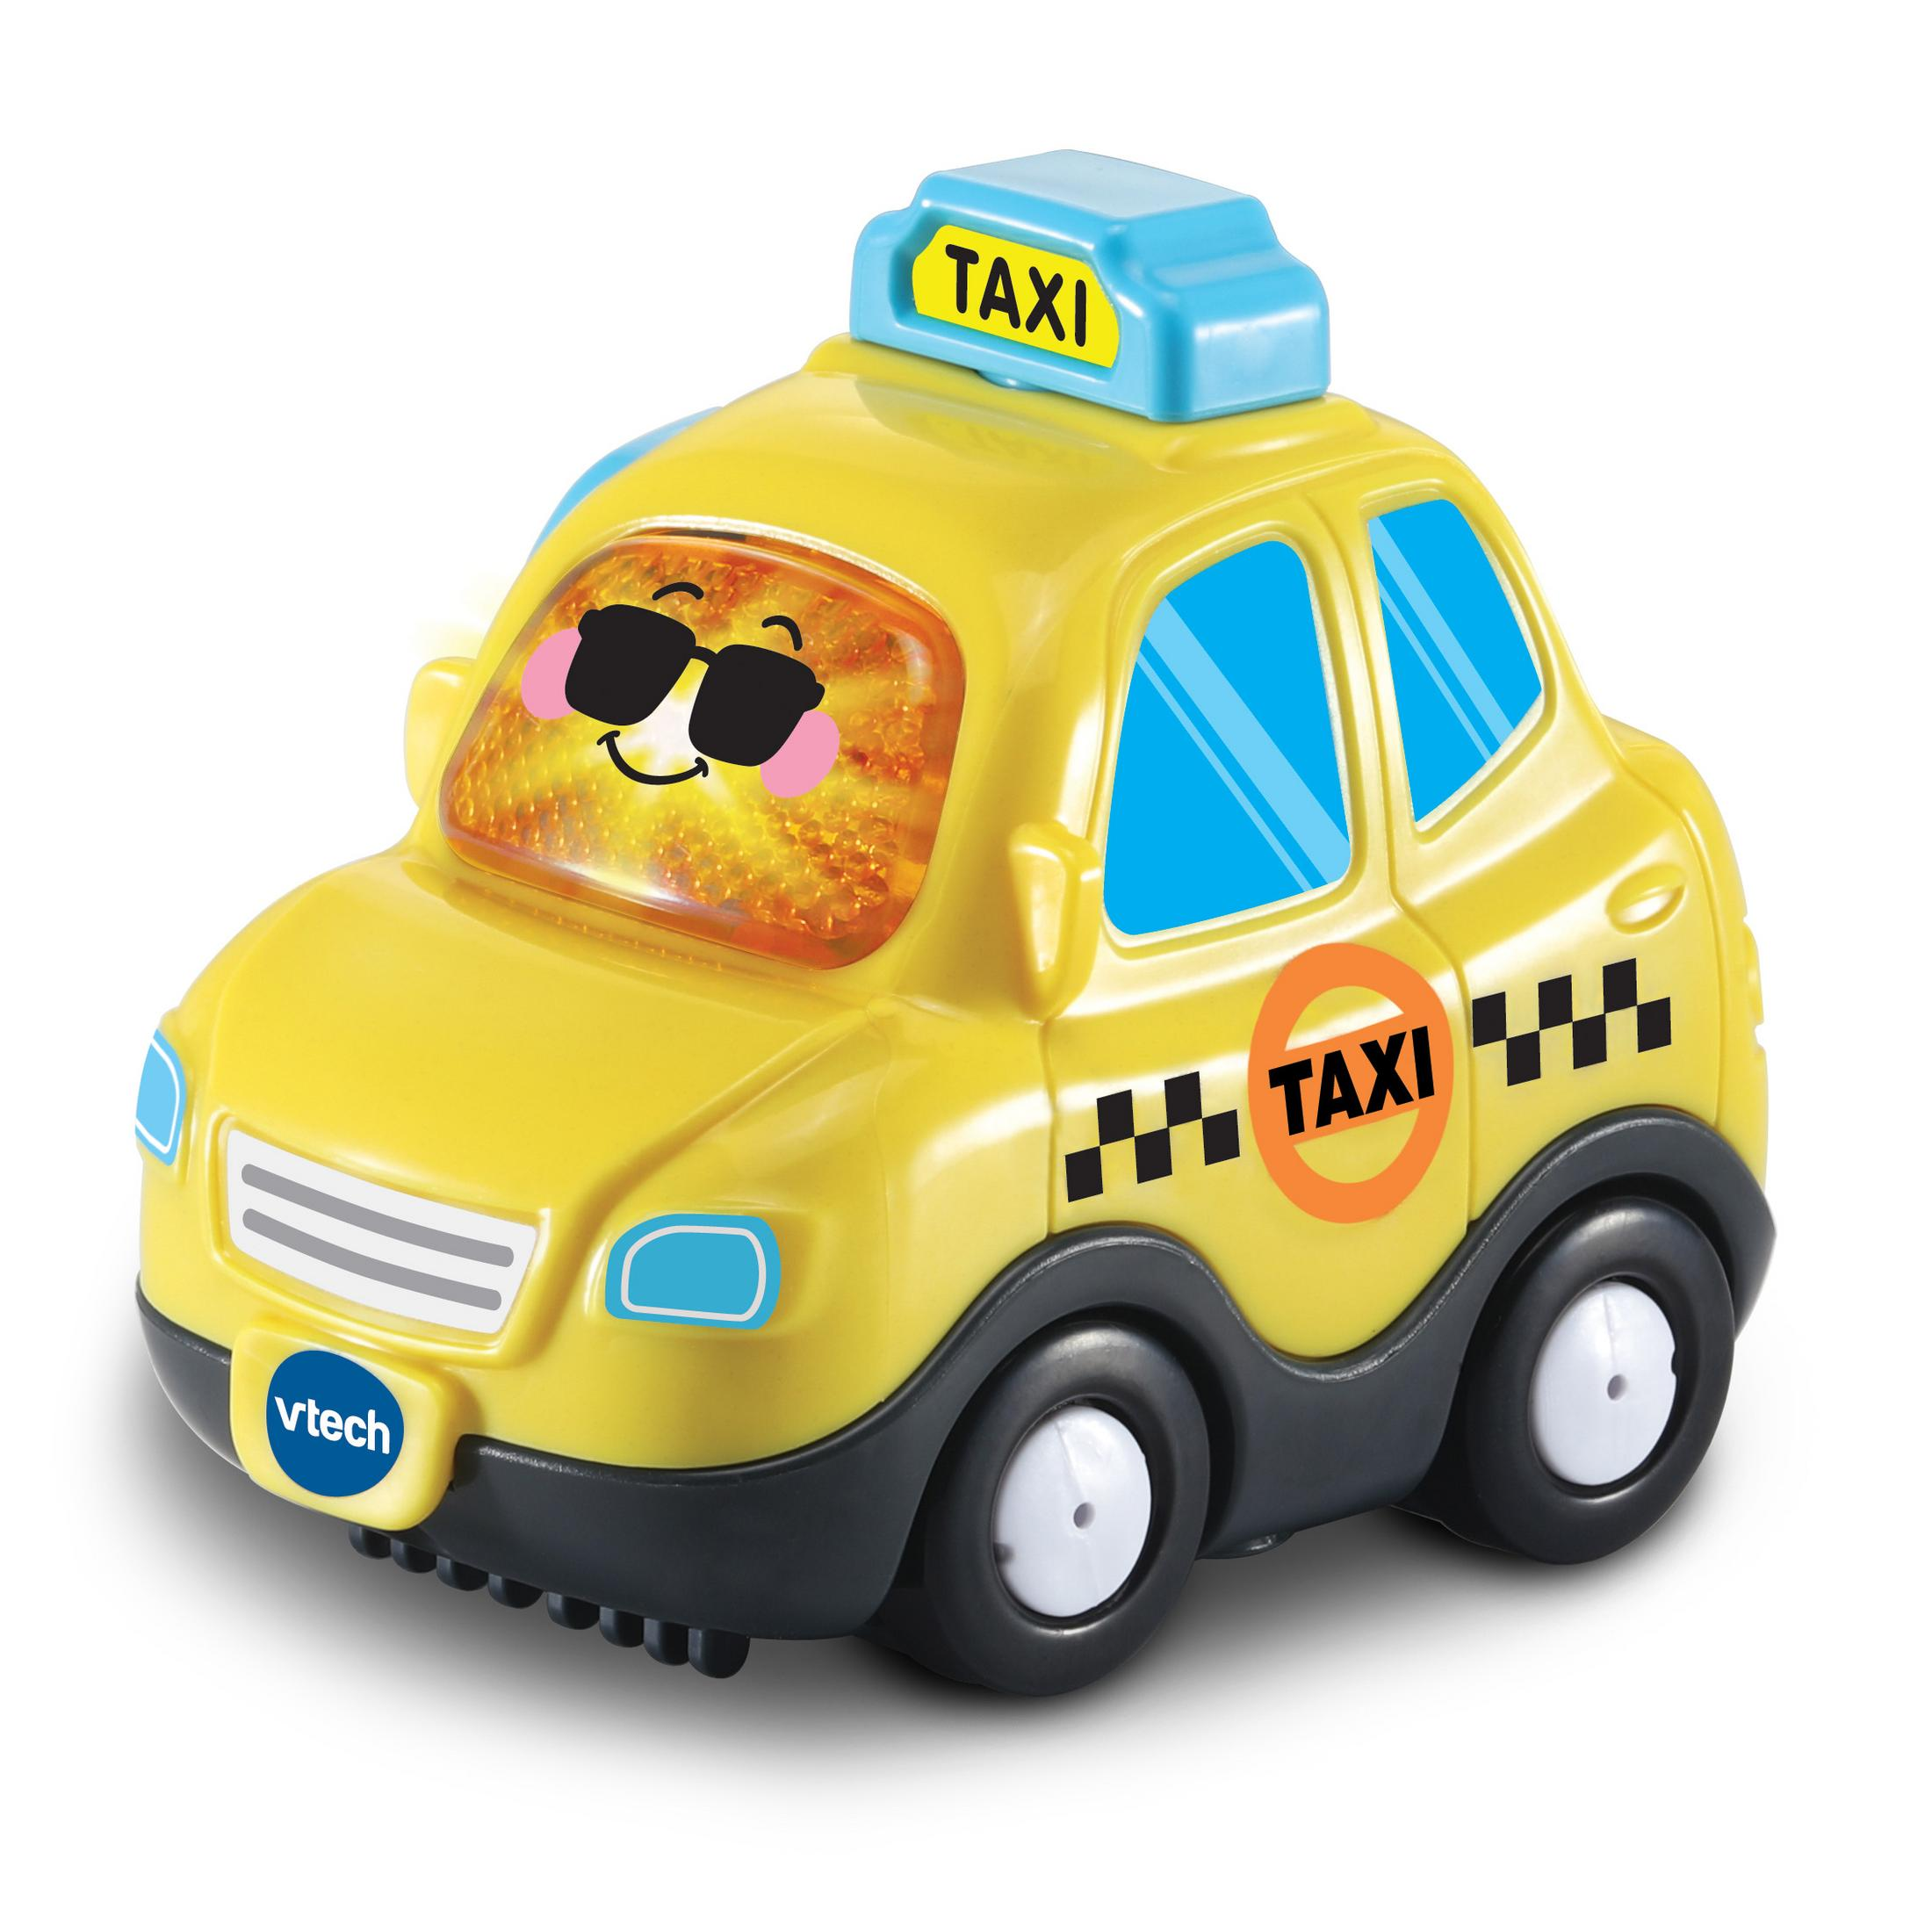 VTECH 80-561104 TUT TUT TAXI - BF Gelb Spielzeugauto